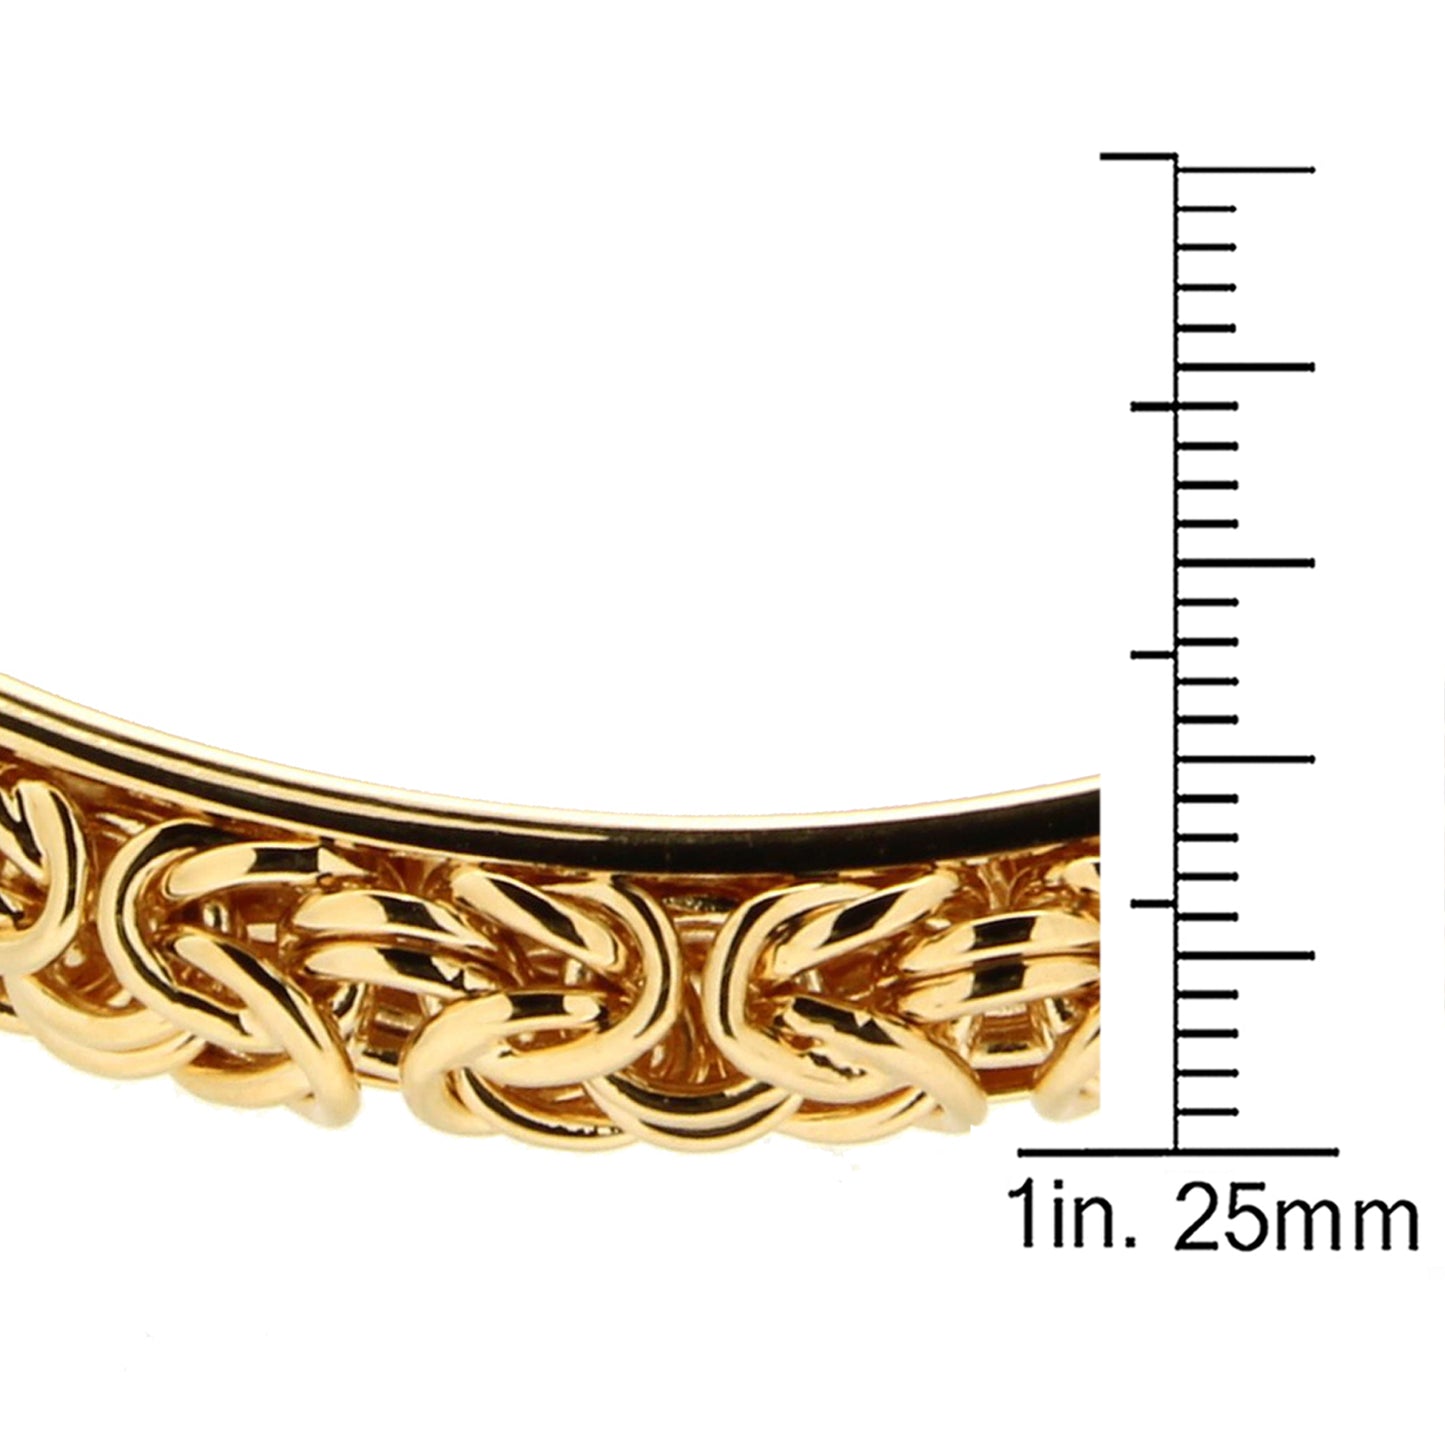 7" Byzantine Cuff Bangle Bracelet